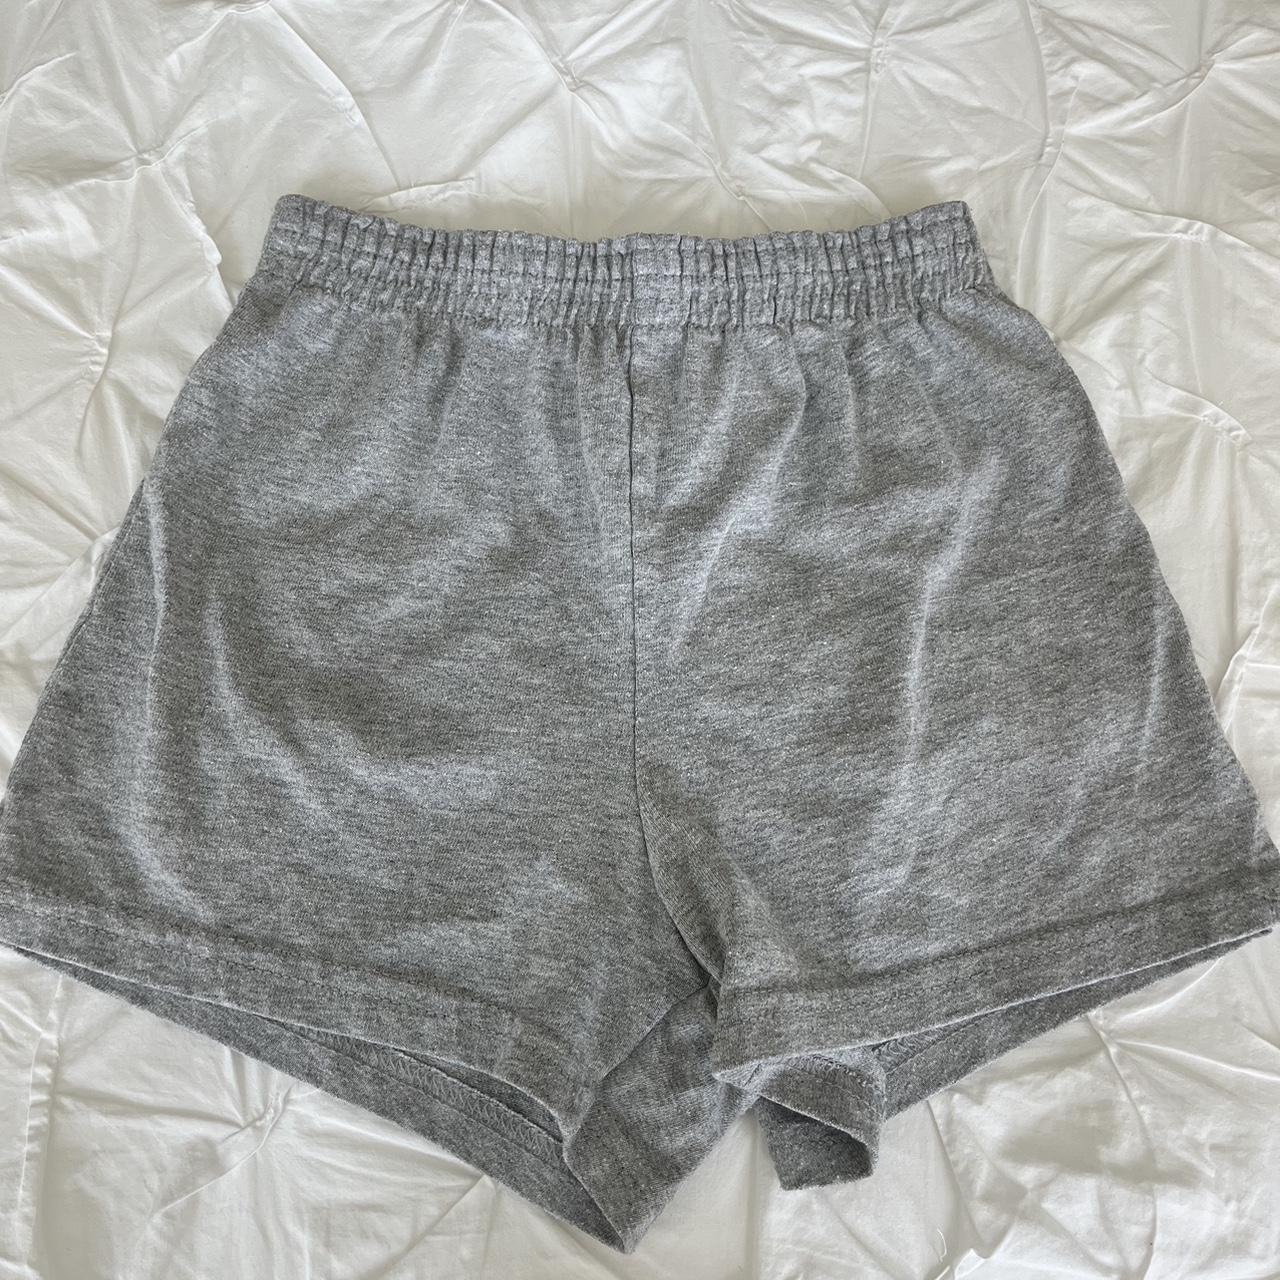 Soffe girls XL shorts - Depop